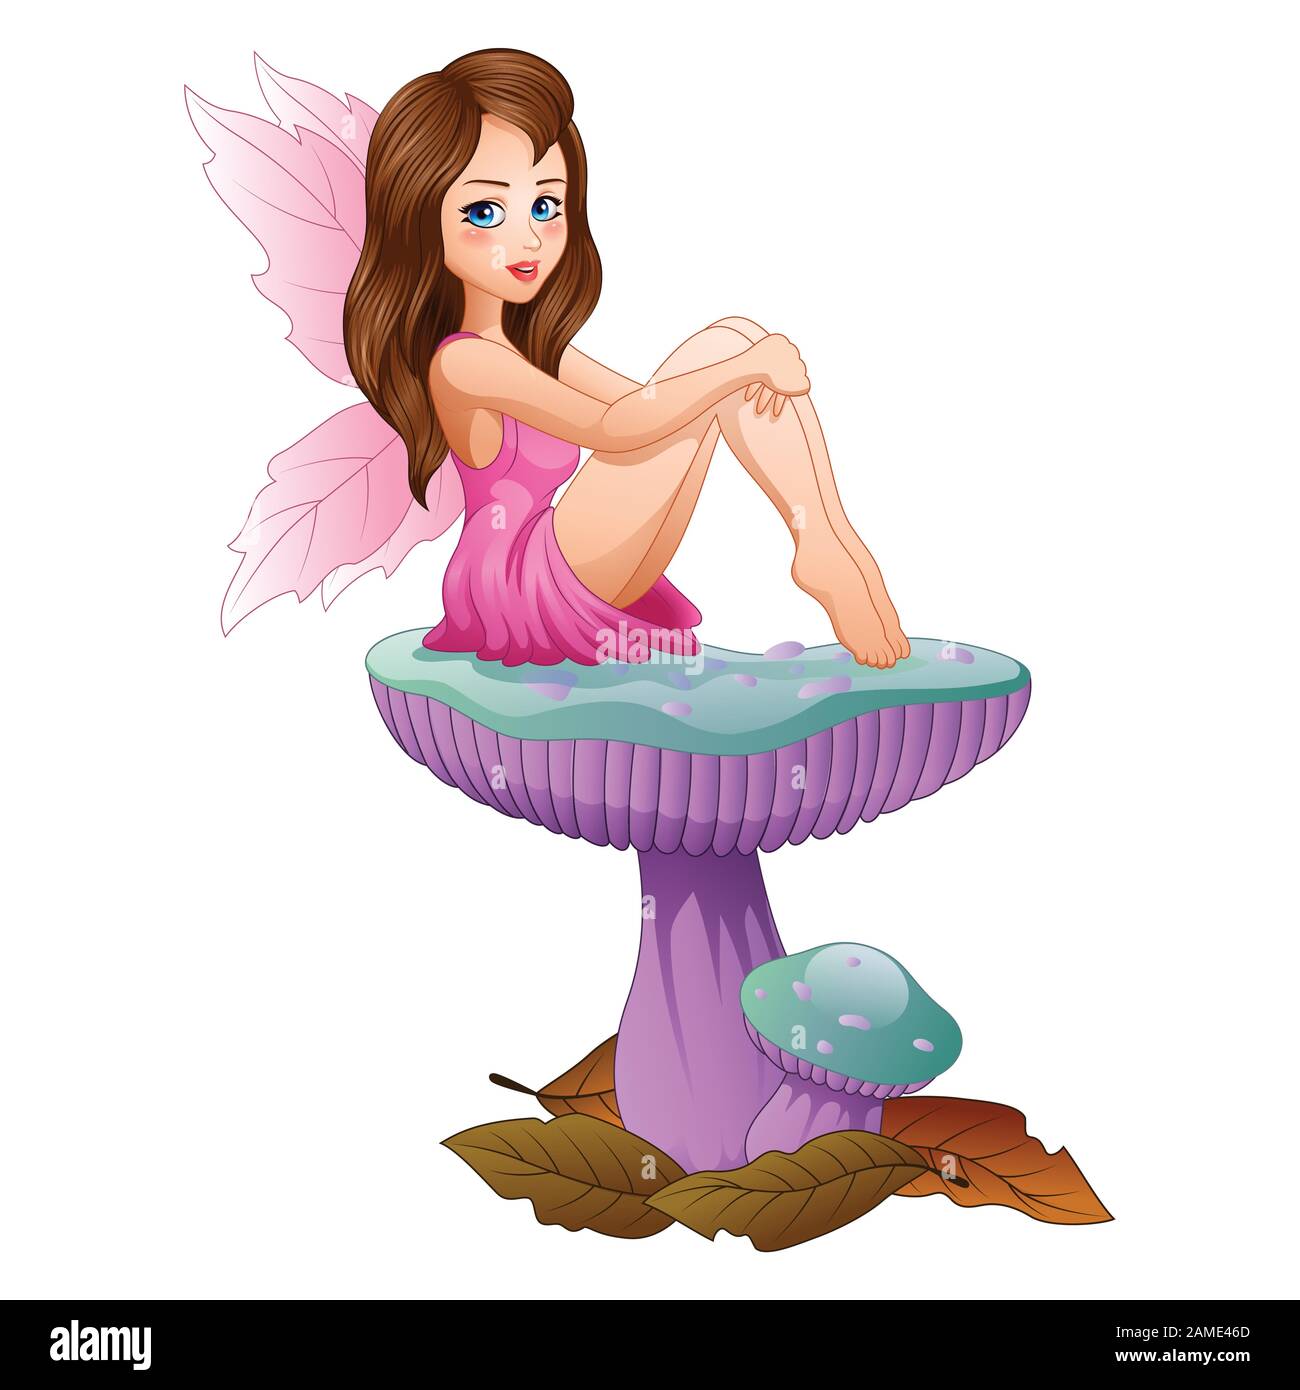 Cartoon cute fairy sitting on mushroom Stock Vector Image & Art ...